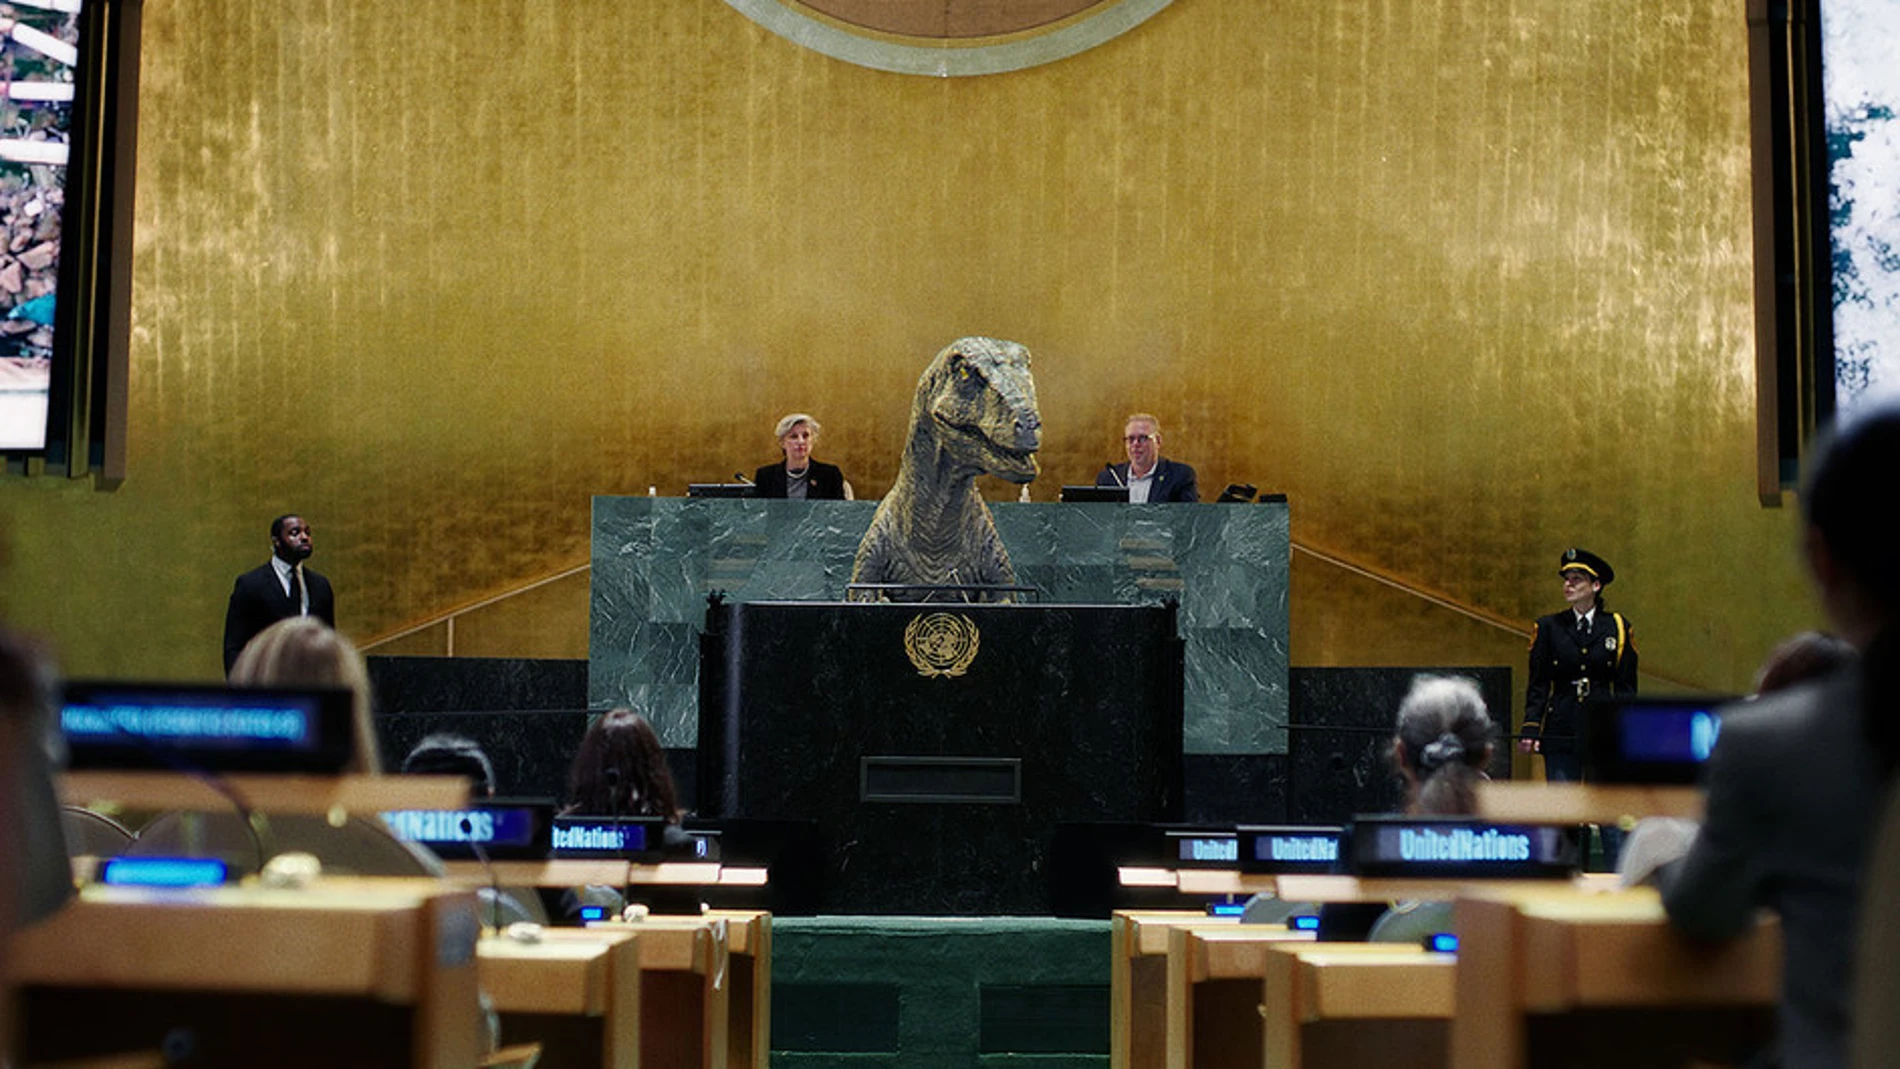 Una imagen del vídeo de la ONU con un dinosaurio en la asamblea general de Naciones Unidas